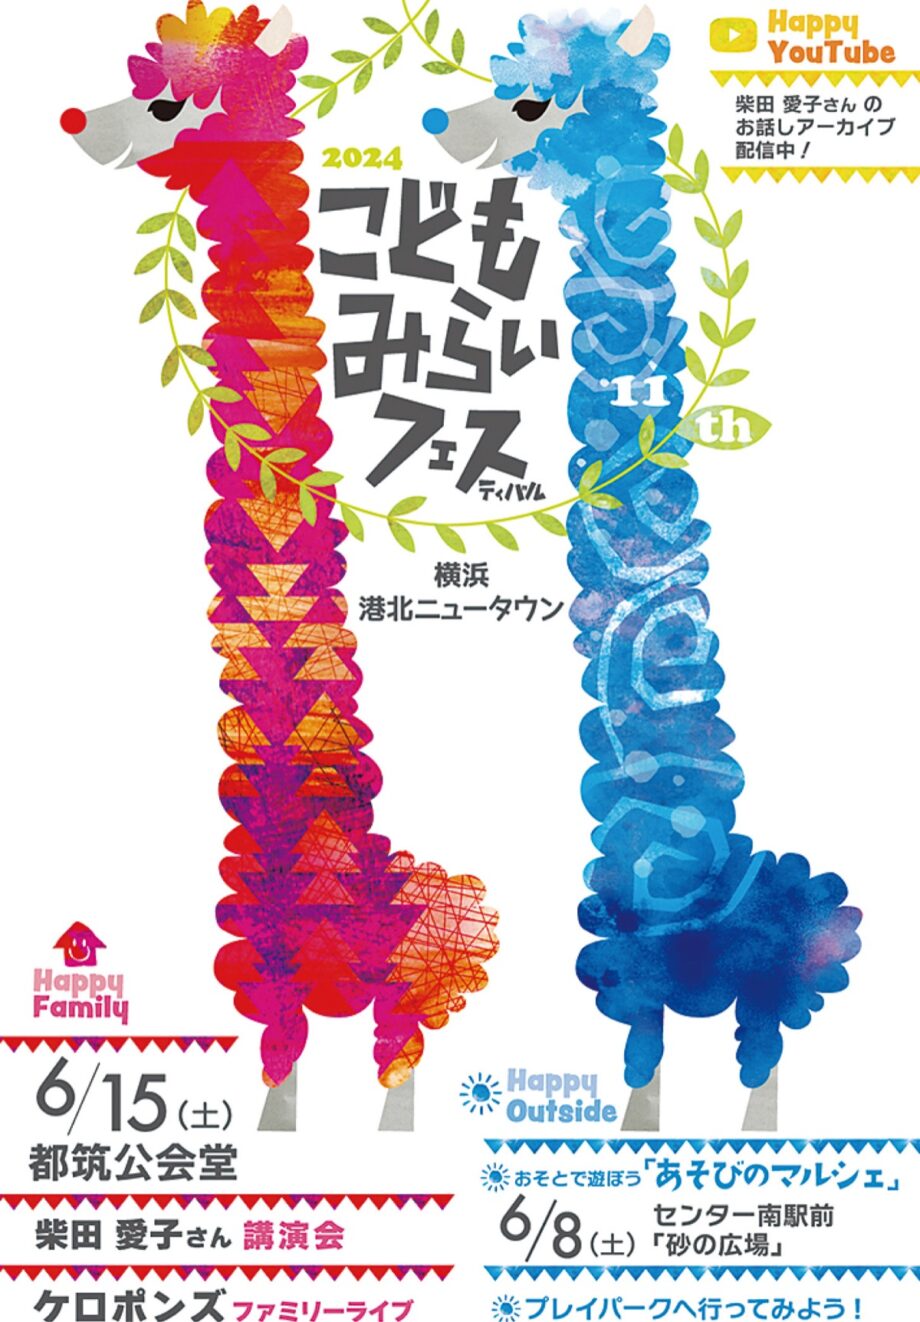 【横浜市都筑区】「こどもみらいフェス」 6月8日・15日開催 ワークショップ、飲食ブースも